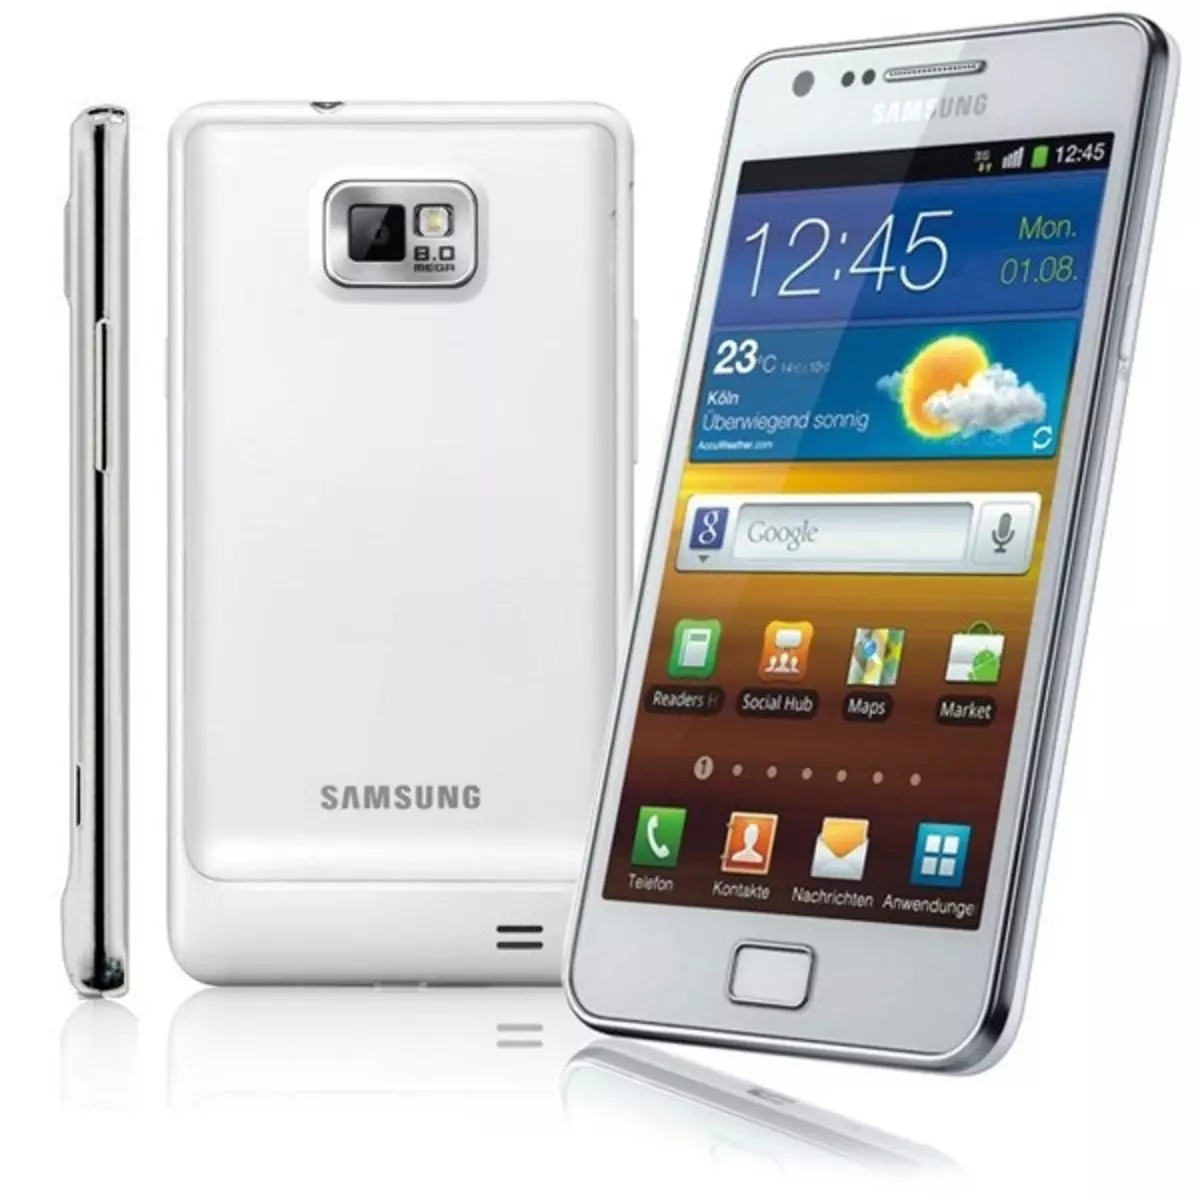 Samsung Galaxy i9100